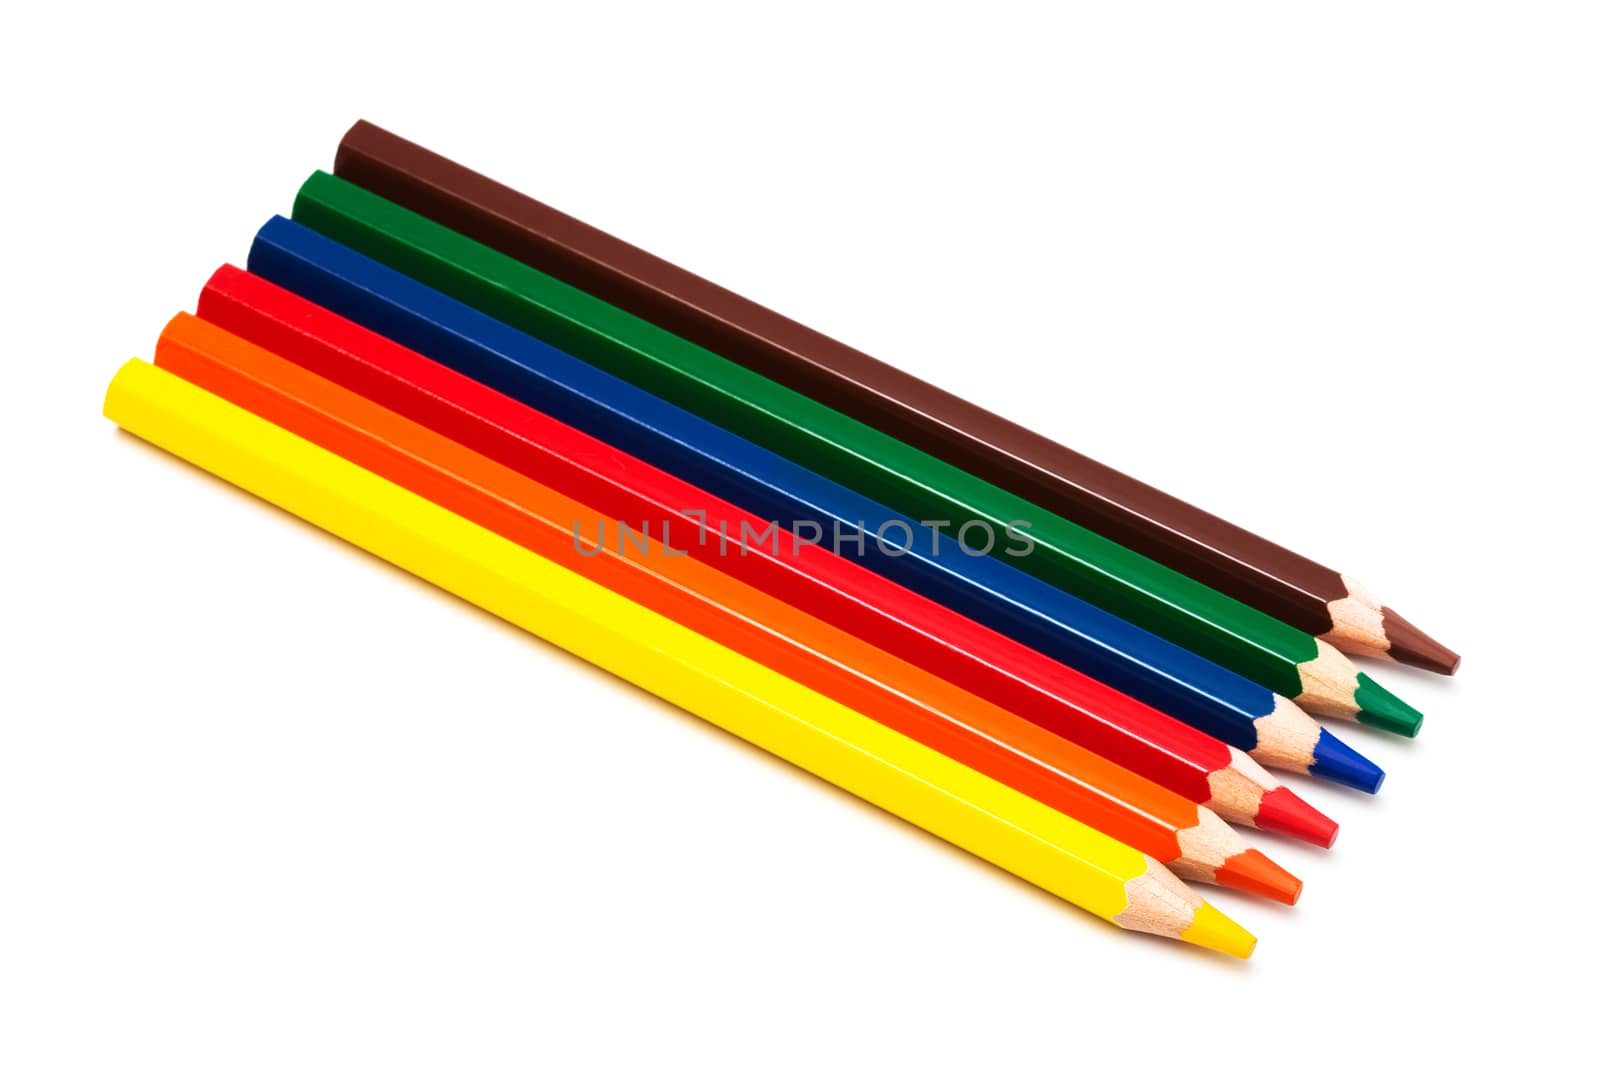 pencils by terex